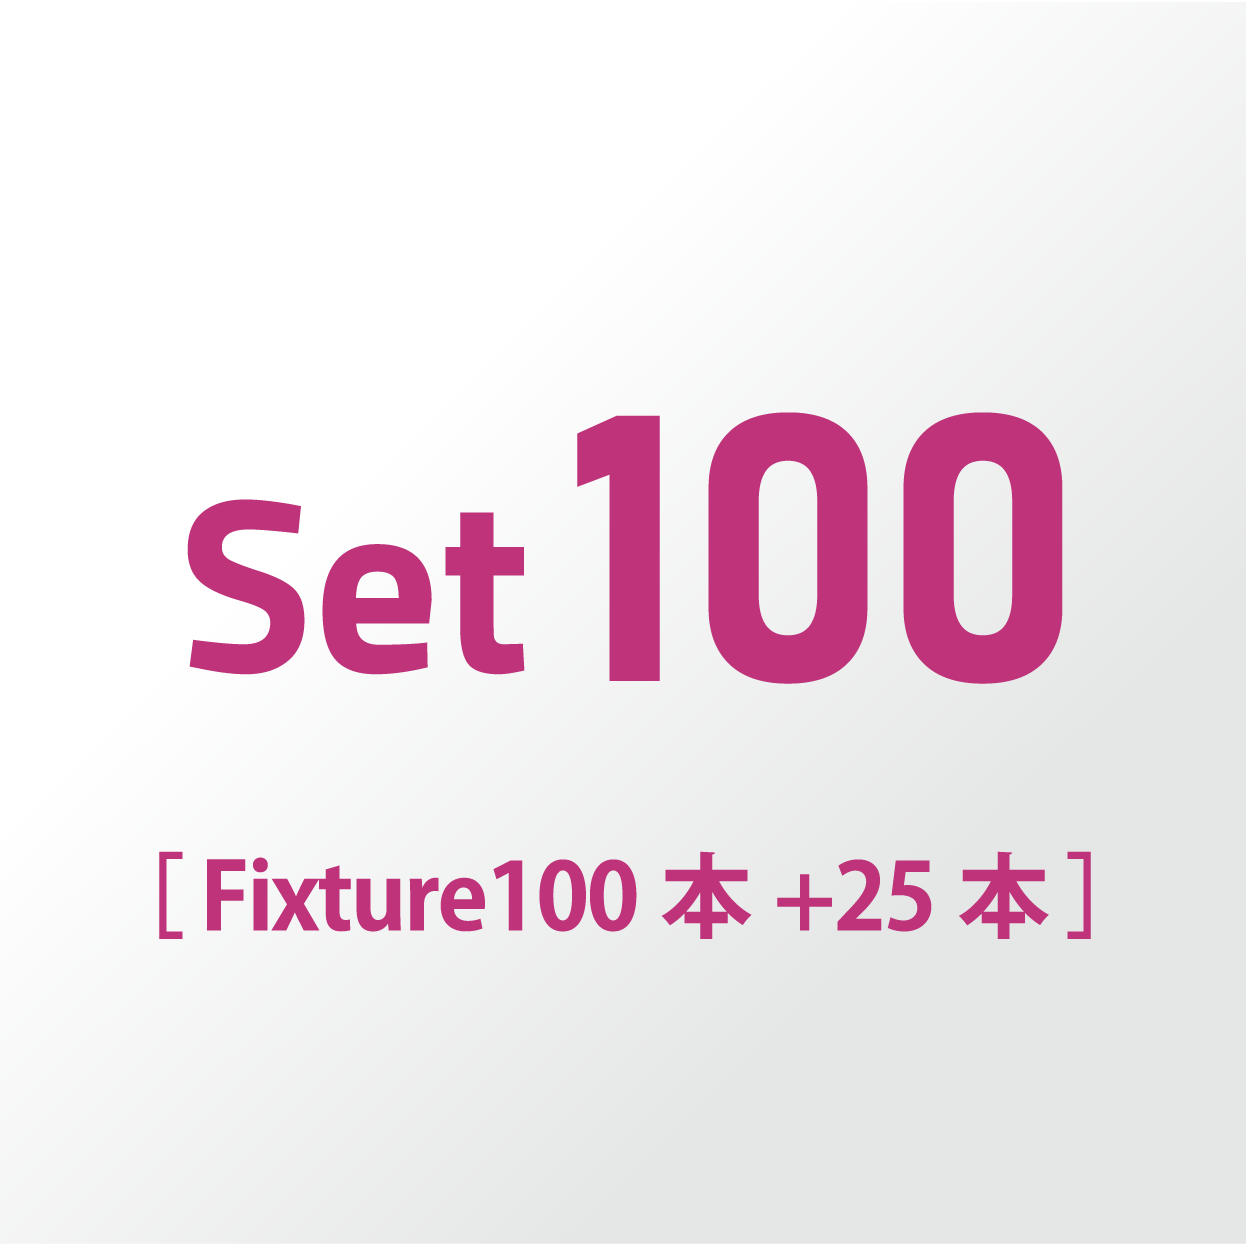 Set100 (Fixture 100本+25本)